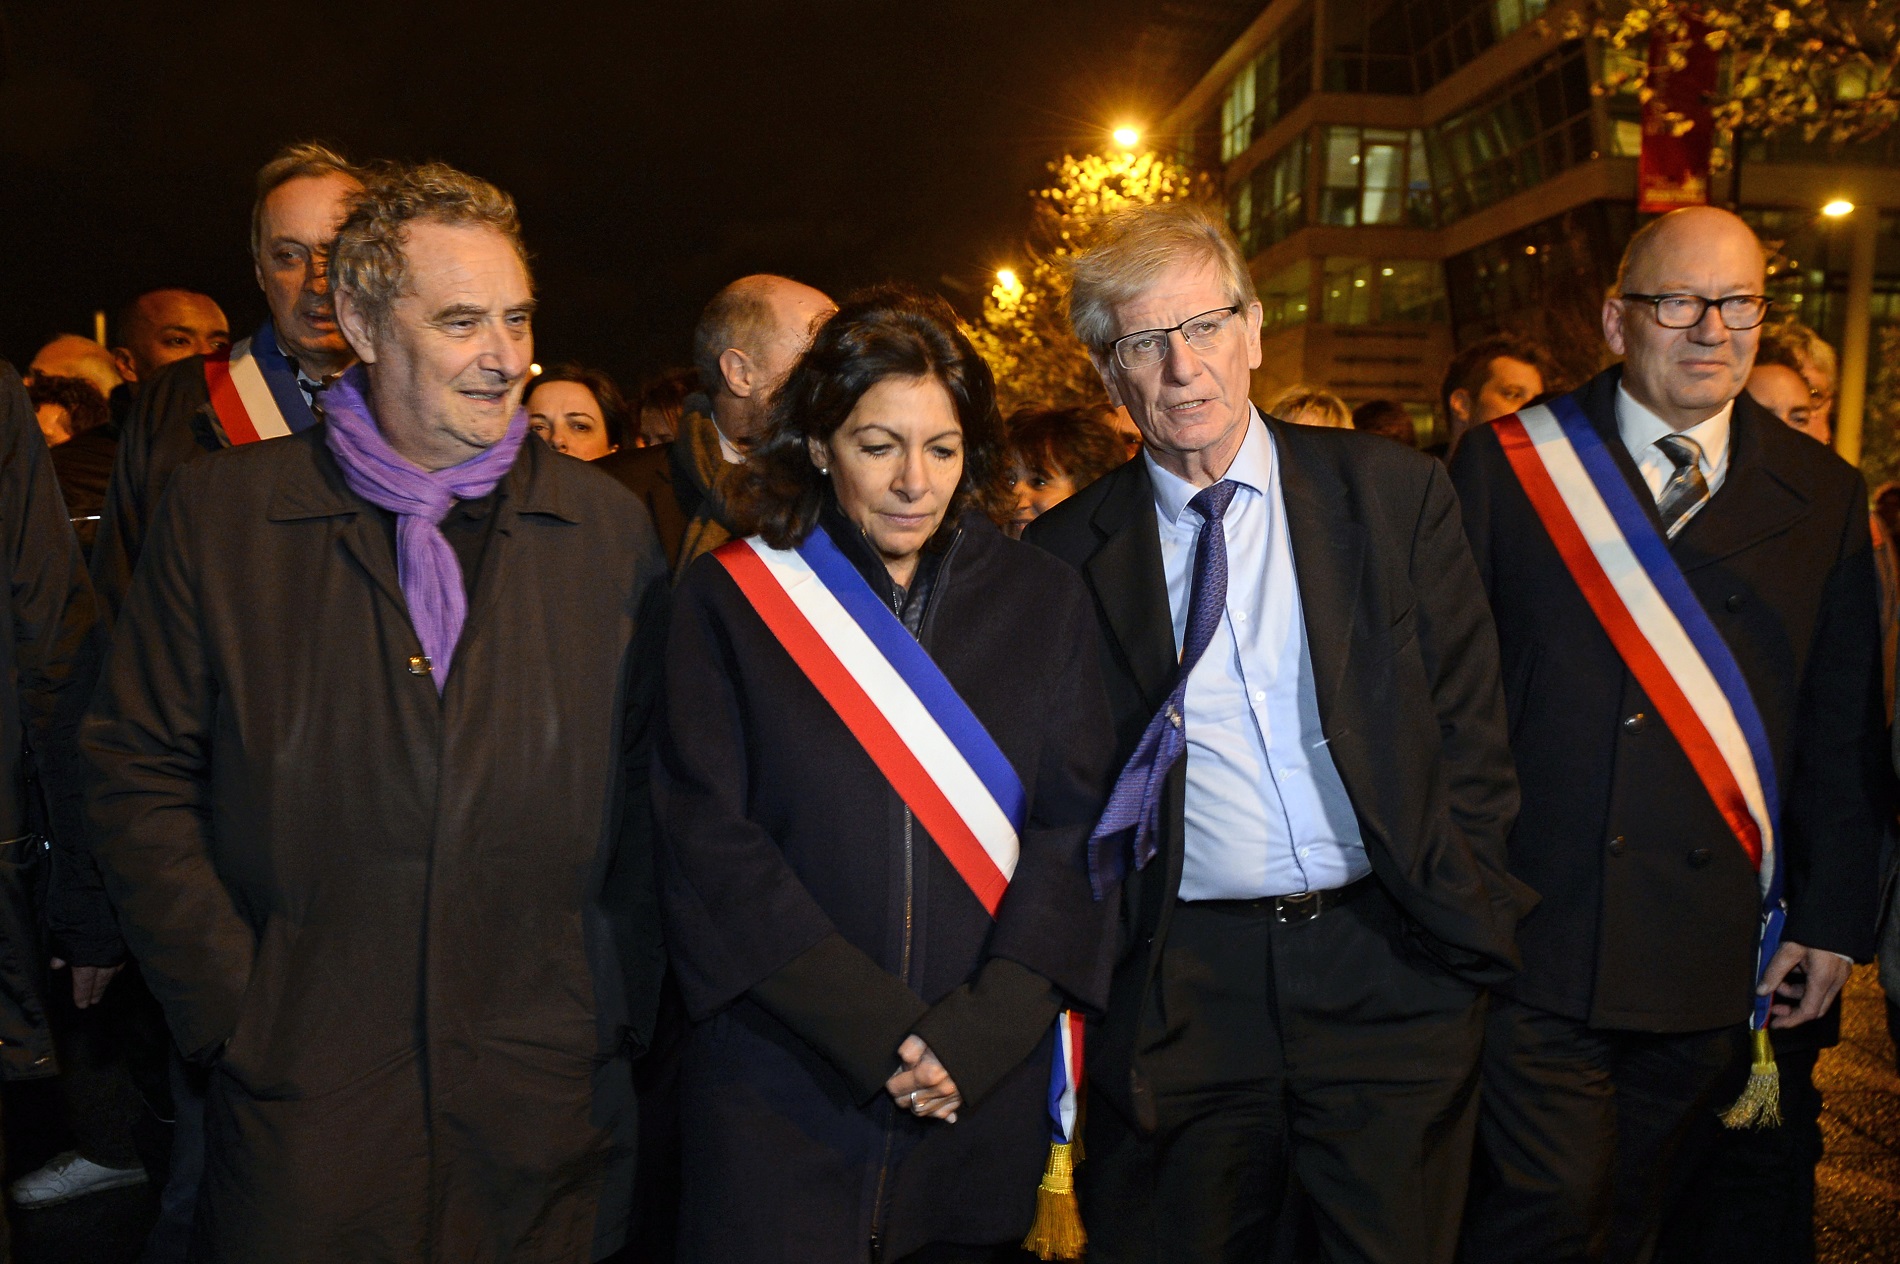 Párizs környéki polgármesterek megemlékezése. Középen Anne Hidalgo párizsi városvezető. AFP PHOTO / ALAIN JOCARD / AFP / ALAIN JOCARD